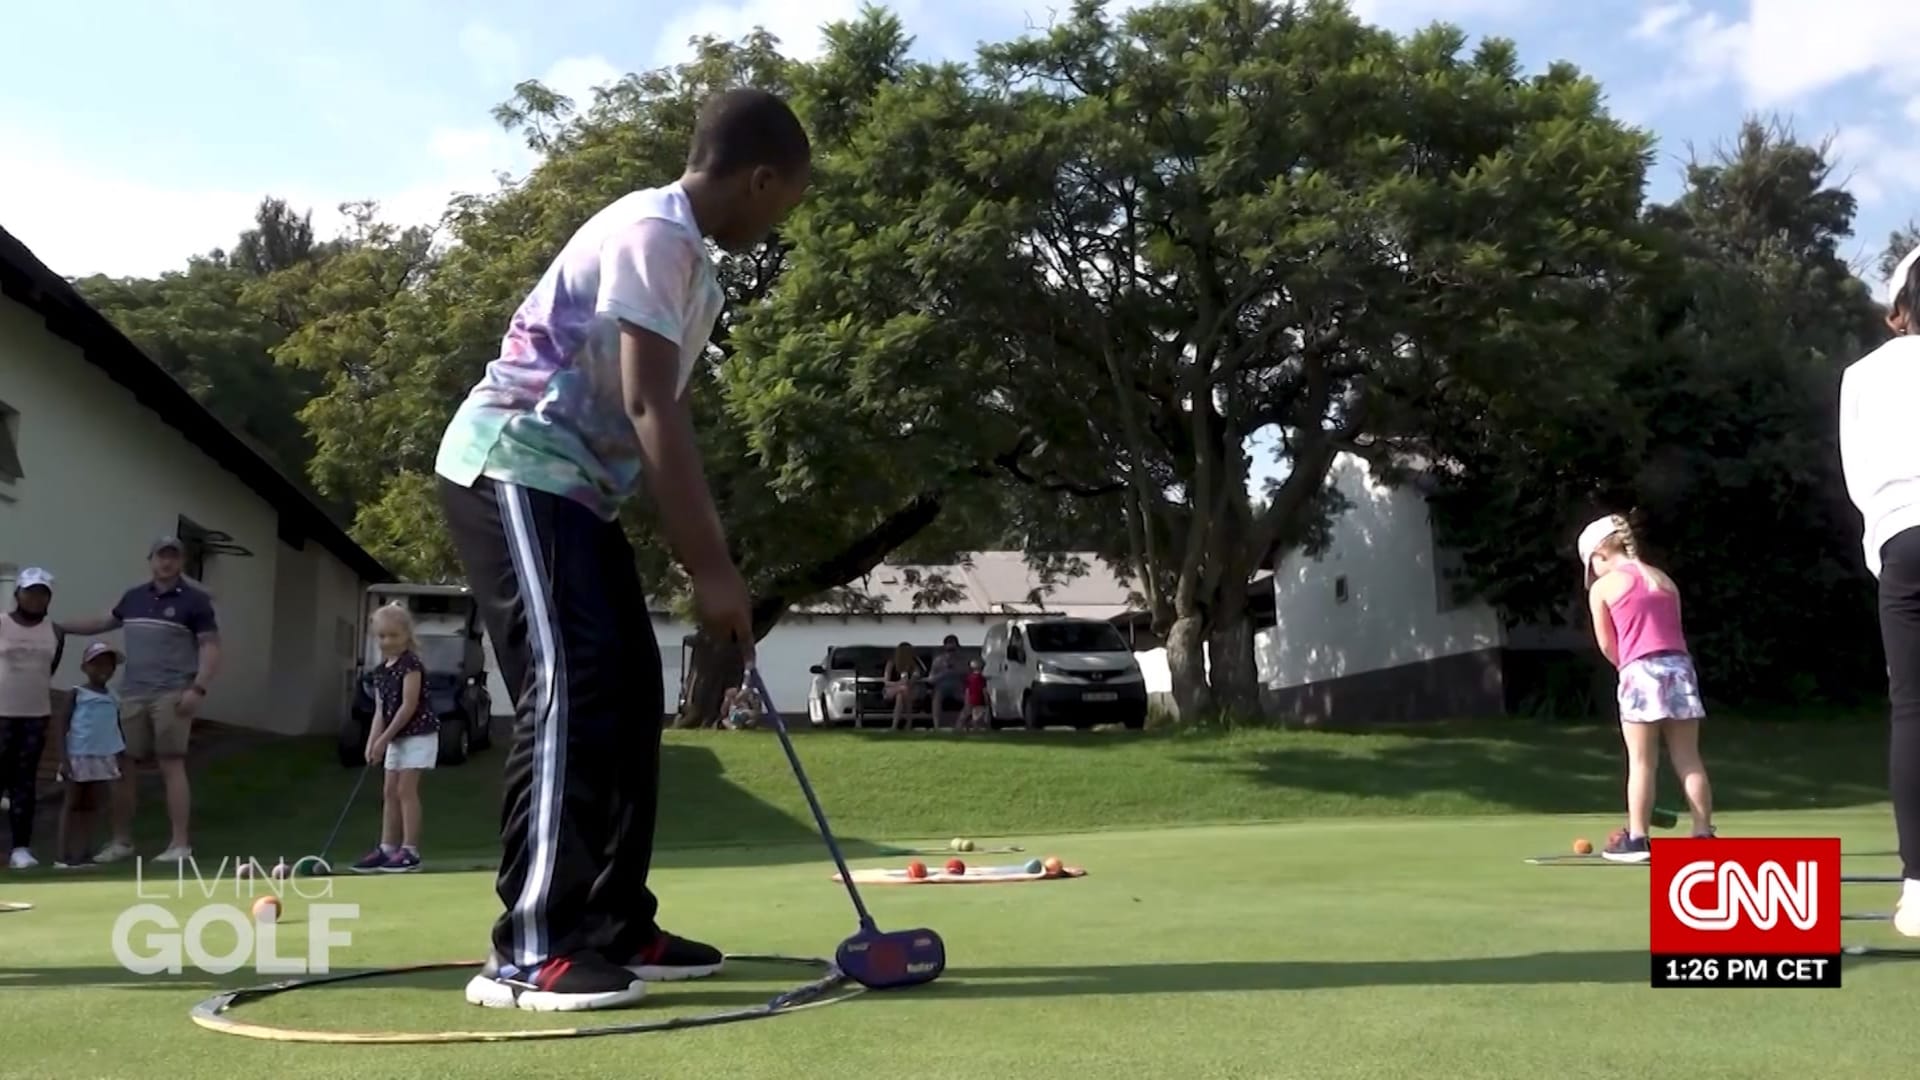 أطفال يبثون الحماس في لعبة الغولف بجنوب أفريقيا